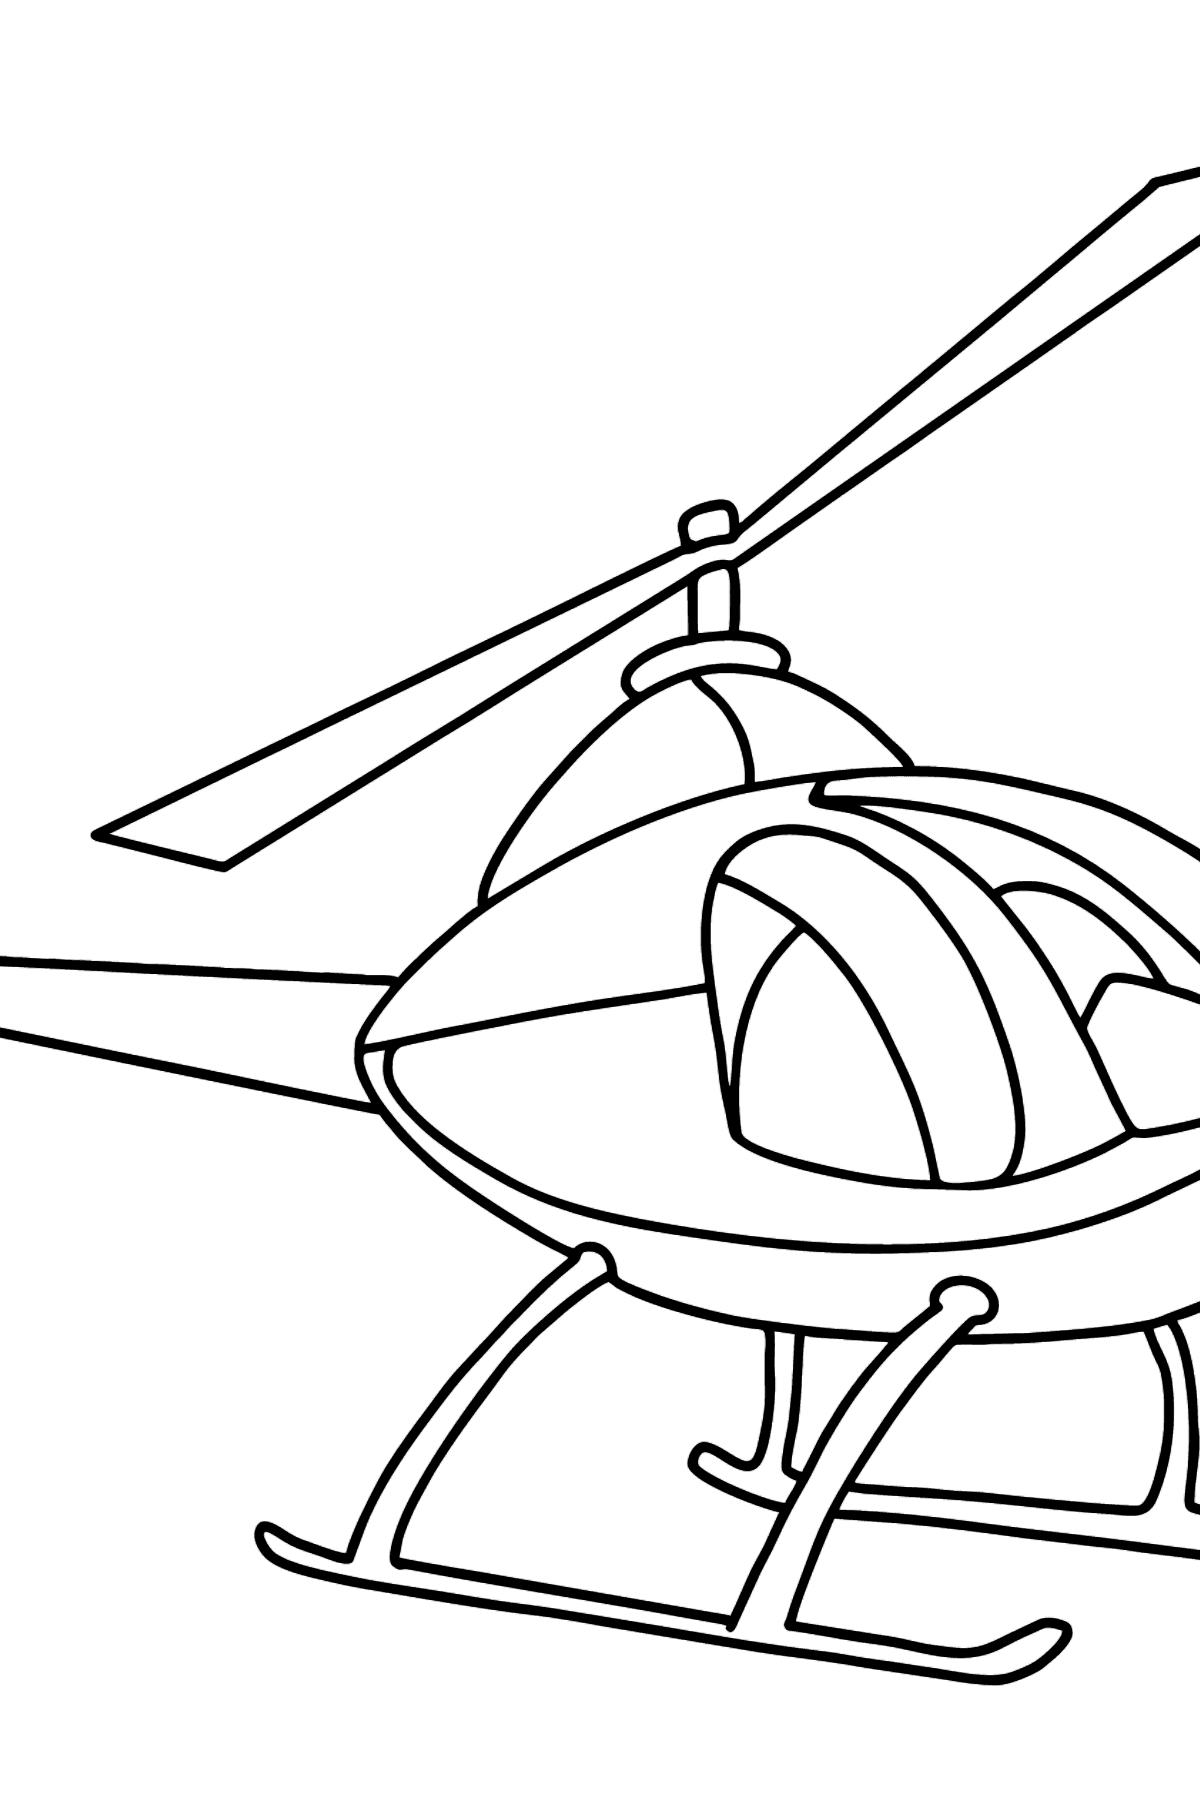 Desenho de helicóptero para colorir para crianças - Imagens para Colorir para Crianças